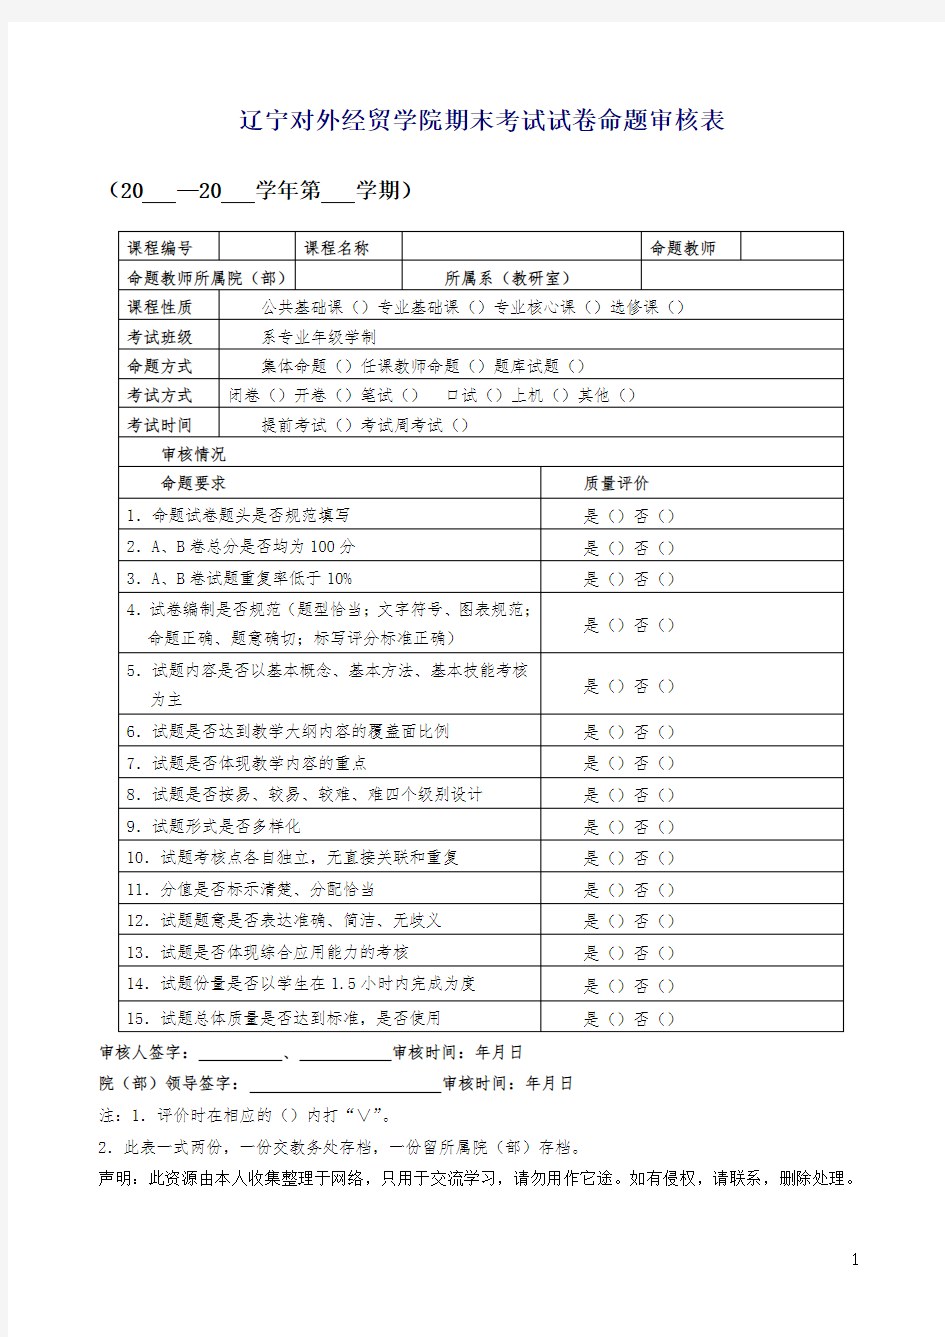 辽宁对外经贸学院期末考试试卷命题审核表